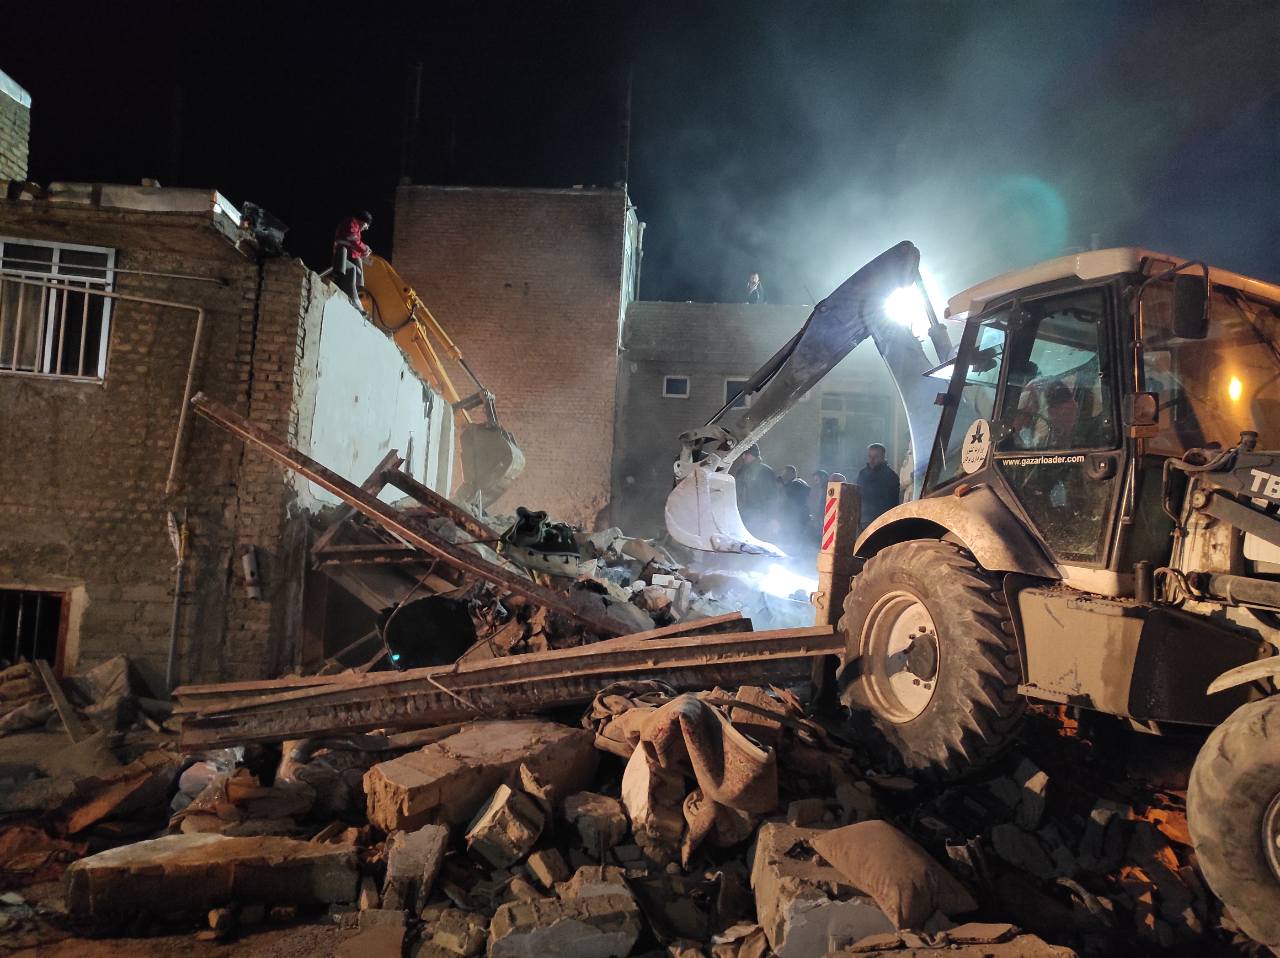 حادثه انفجار منزلی مسکونی در بوکان جان باختن ۶ عضو یک خانواده و مصدومیت ۲ نفر دیگر را رقم زد.
